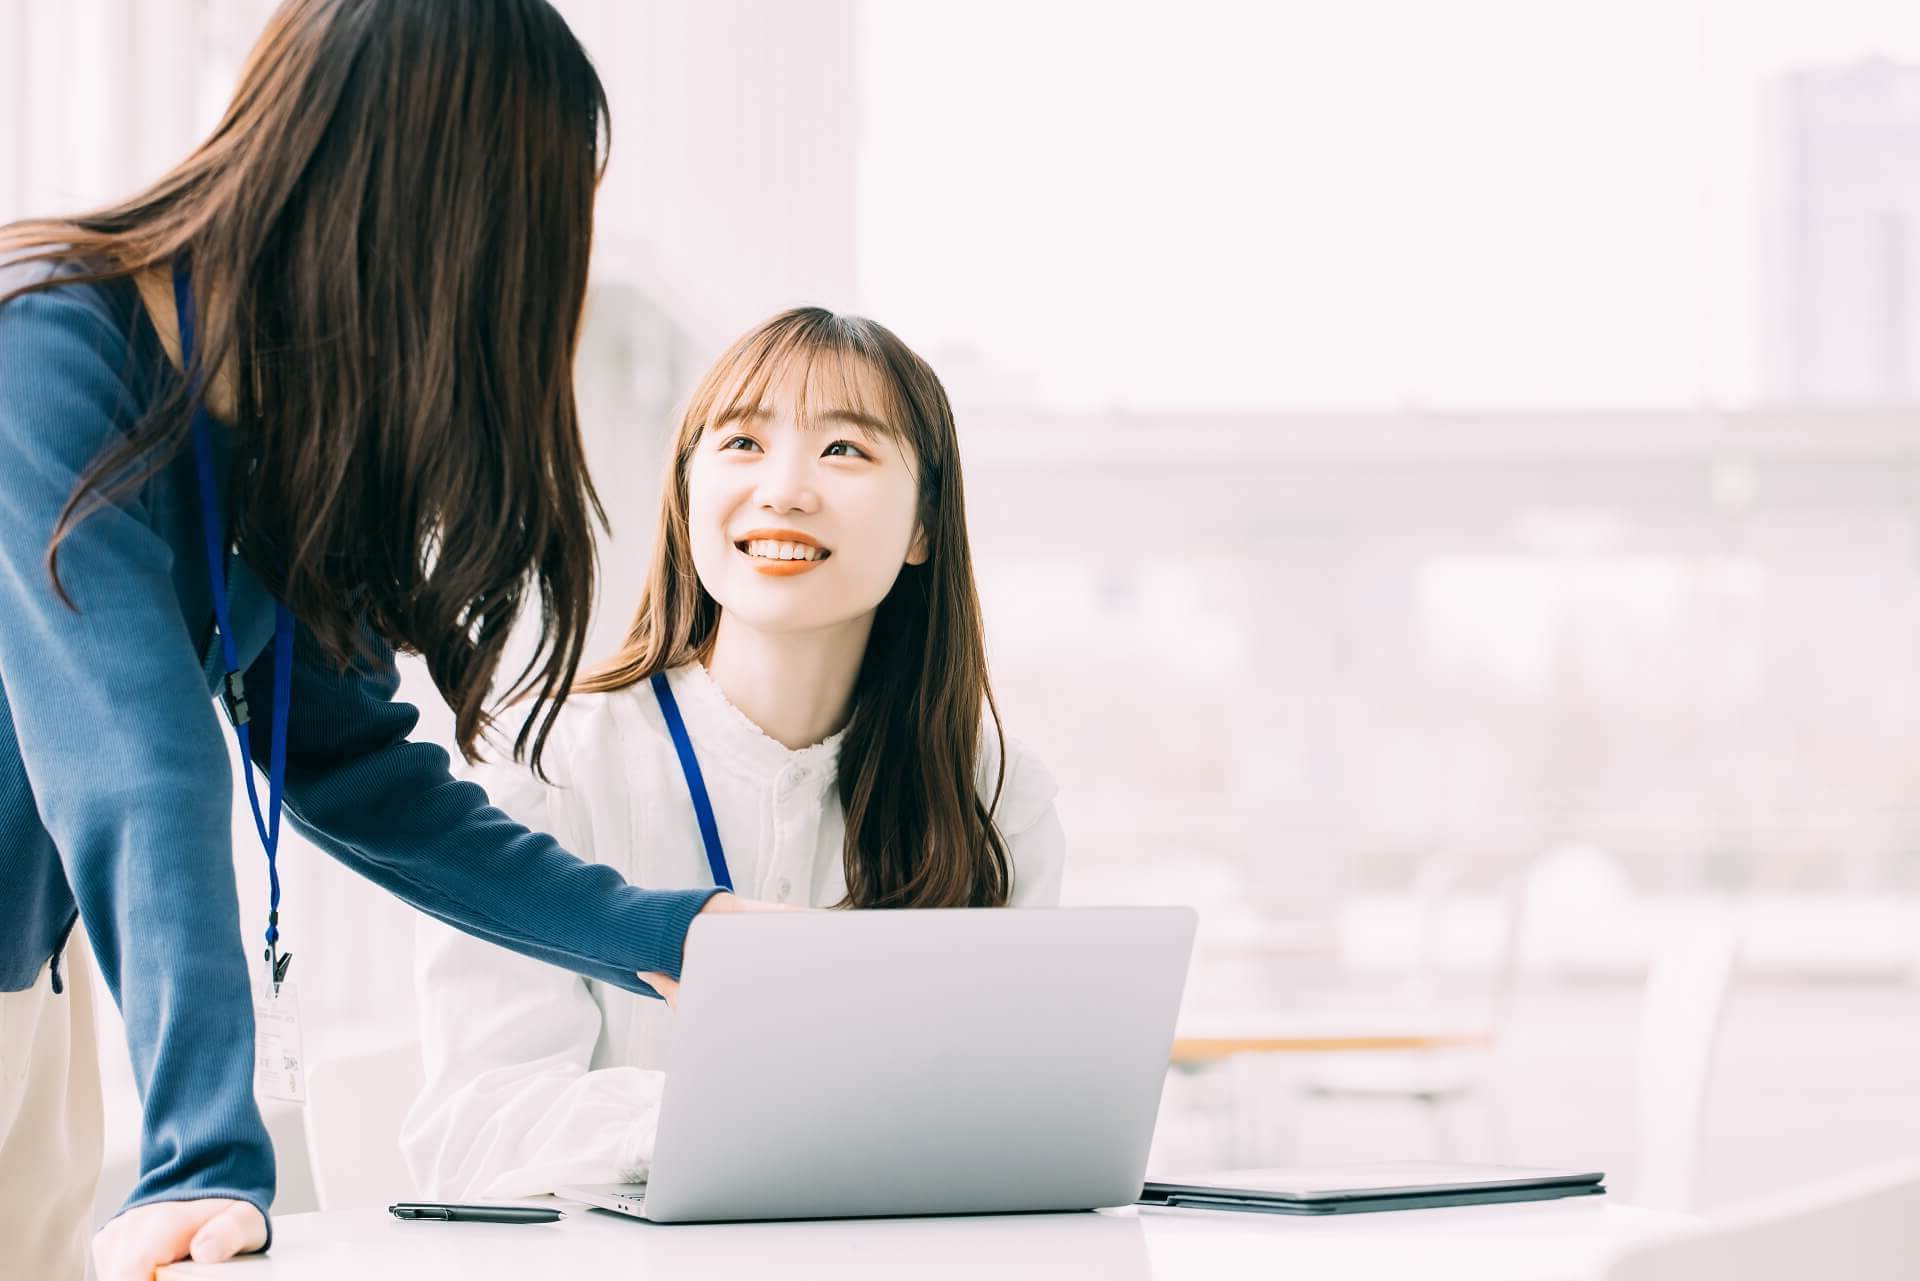 デスクで同僚と明るい笑顔で会話をする女性スタッフのイメージ写真